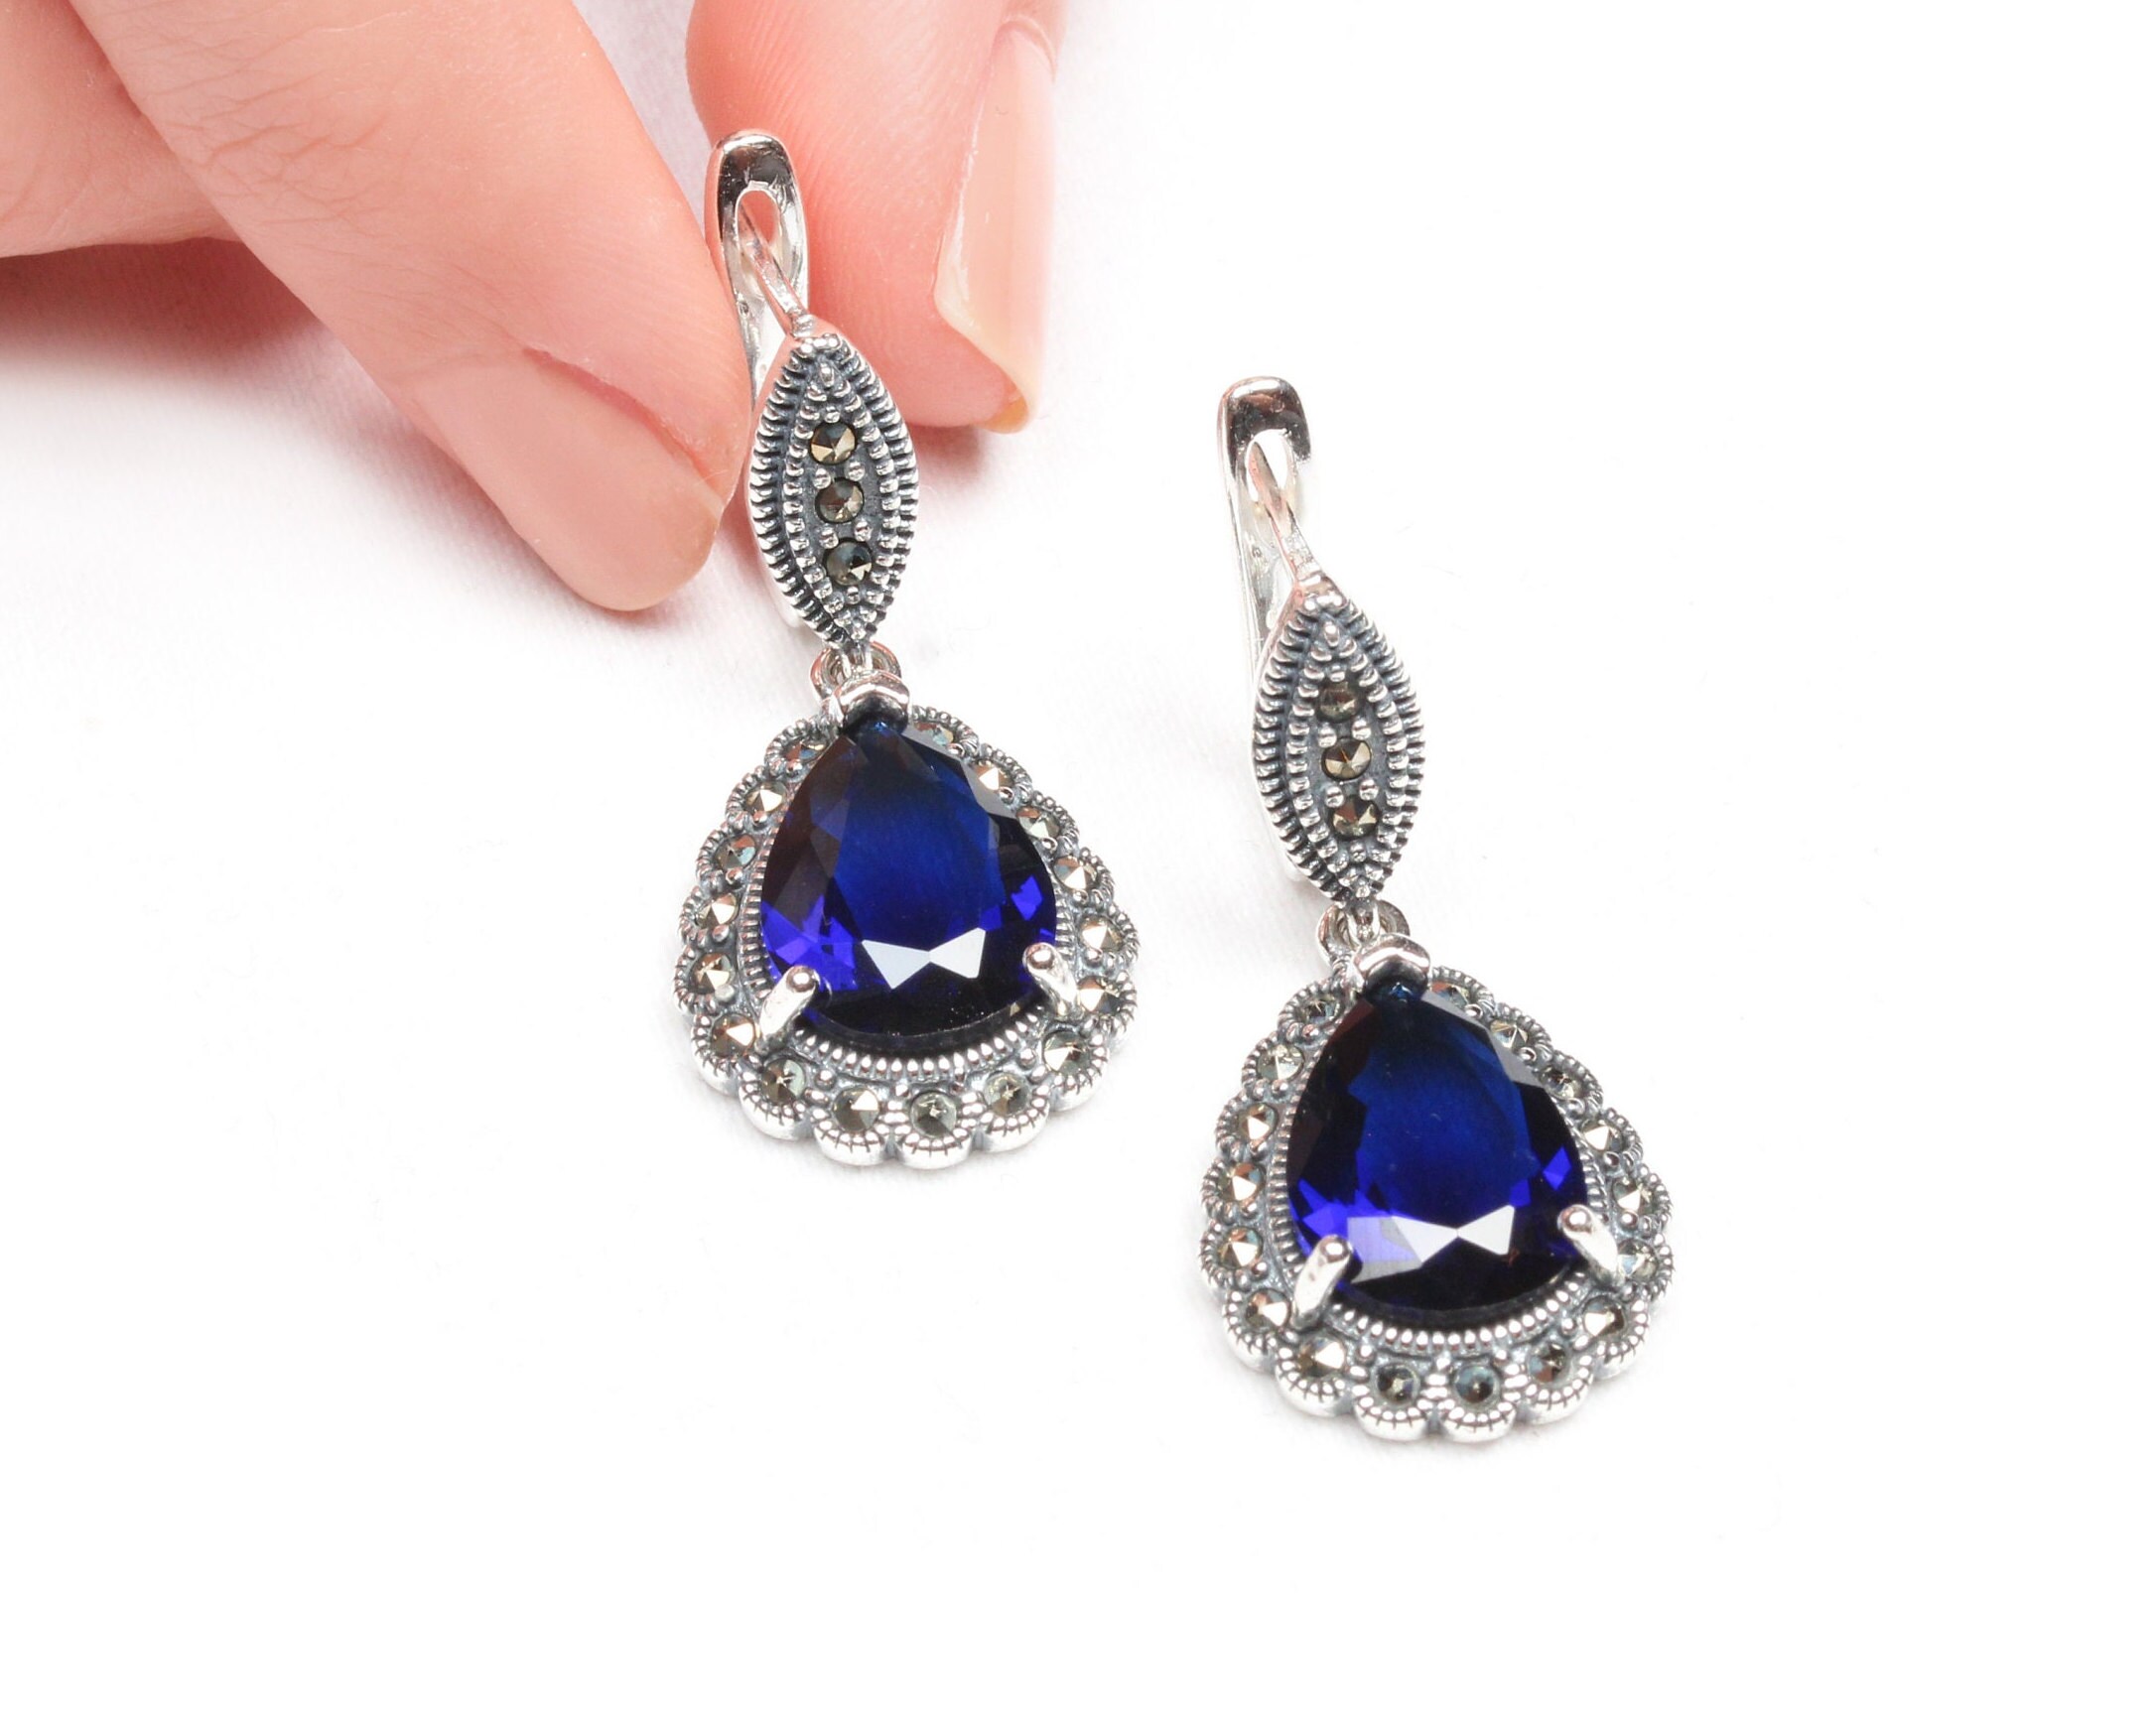 Handmade Earring Women Turkish Handmade Silver Sapphire Stone Earrings Authentic Earrings 925k Sterling Silver Ottoman Earrings